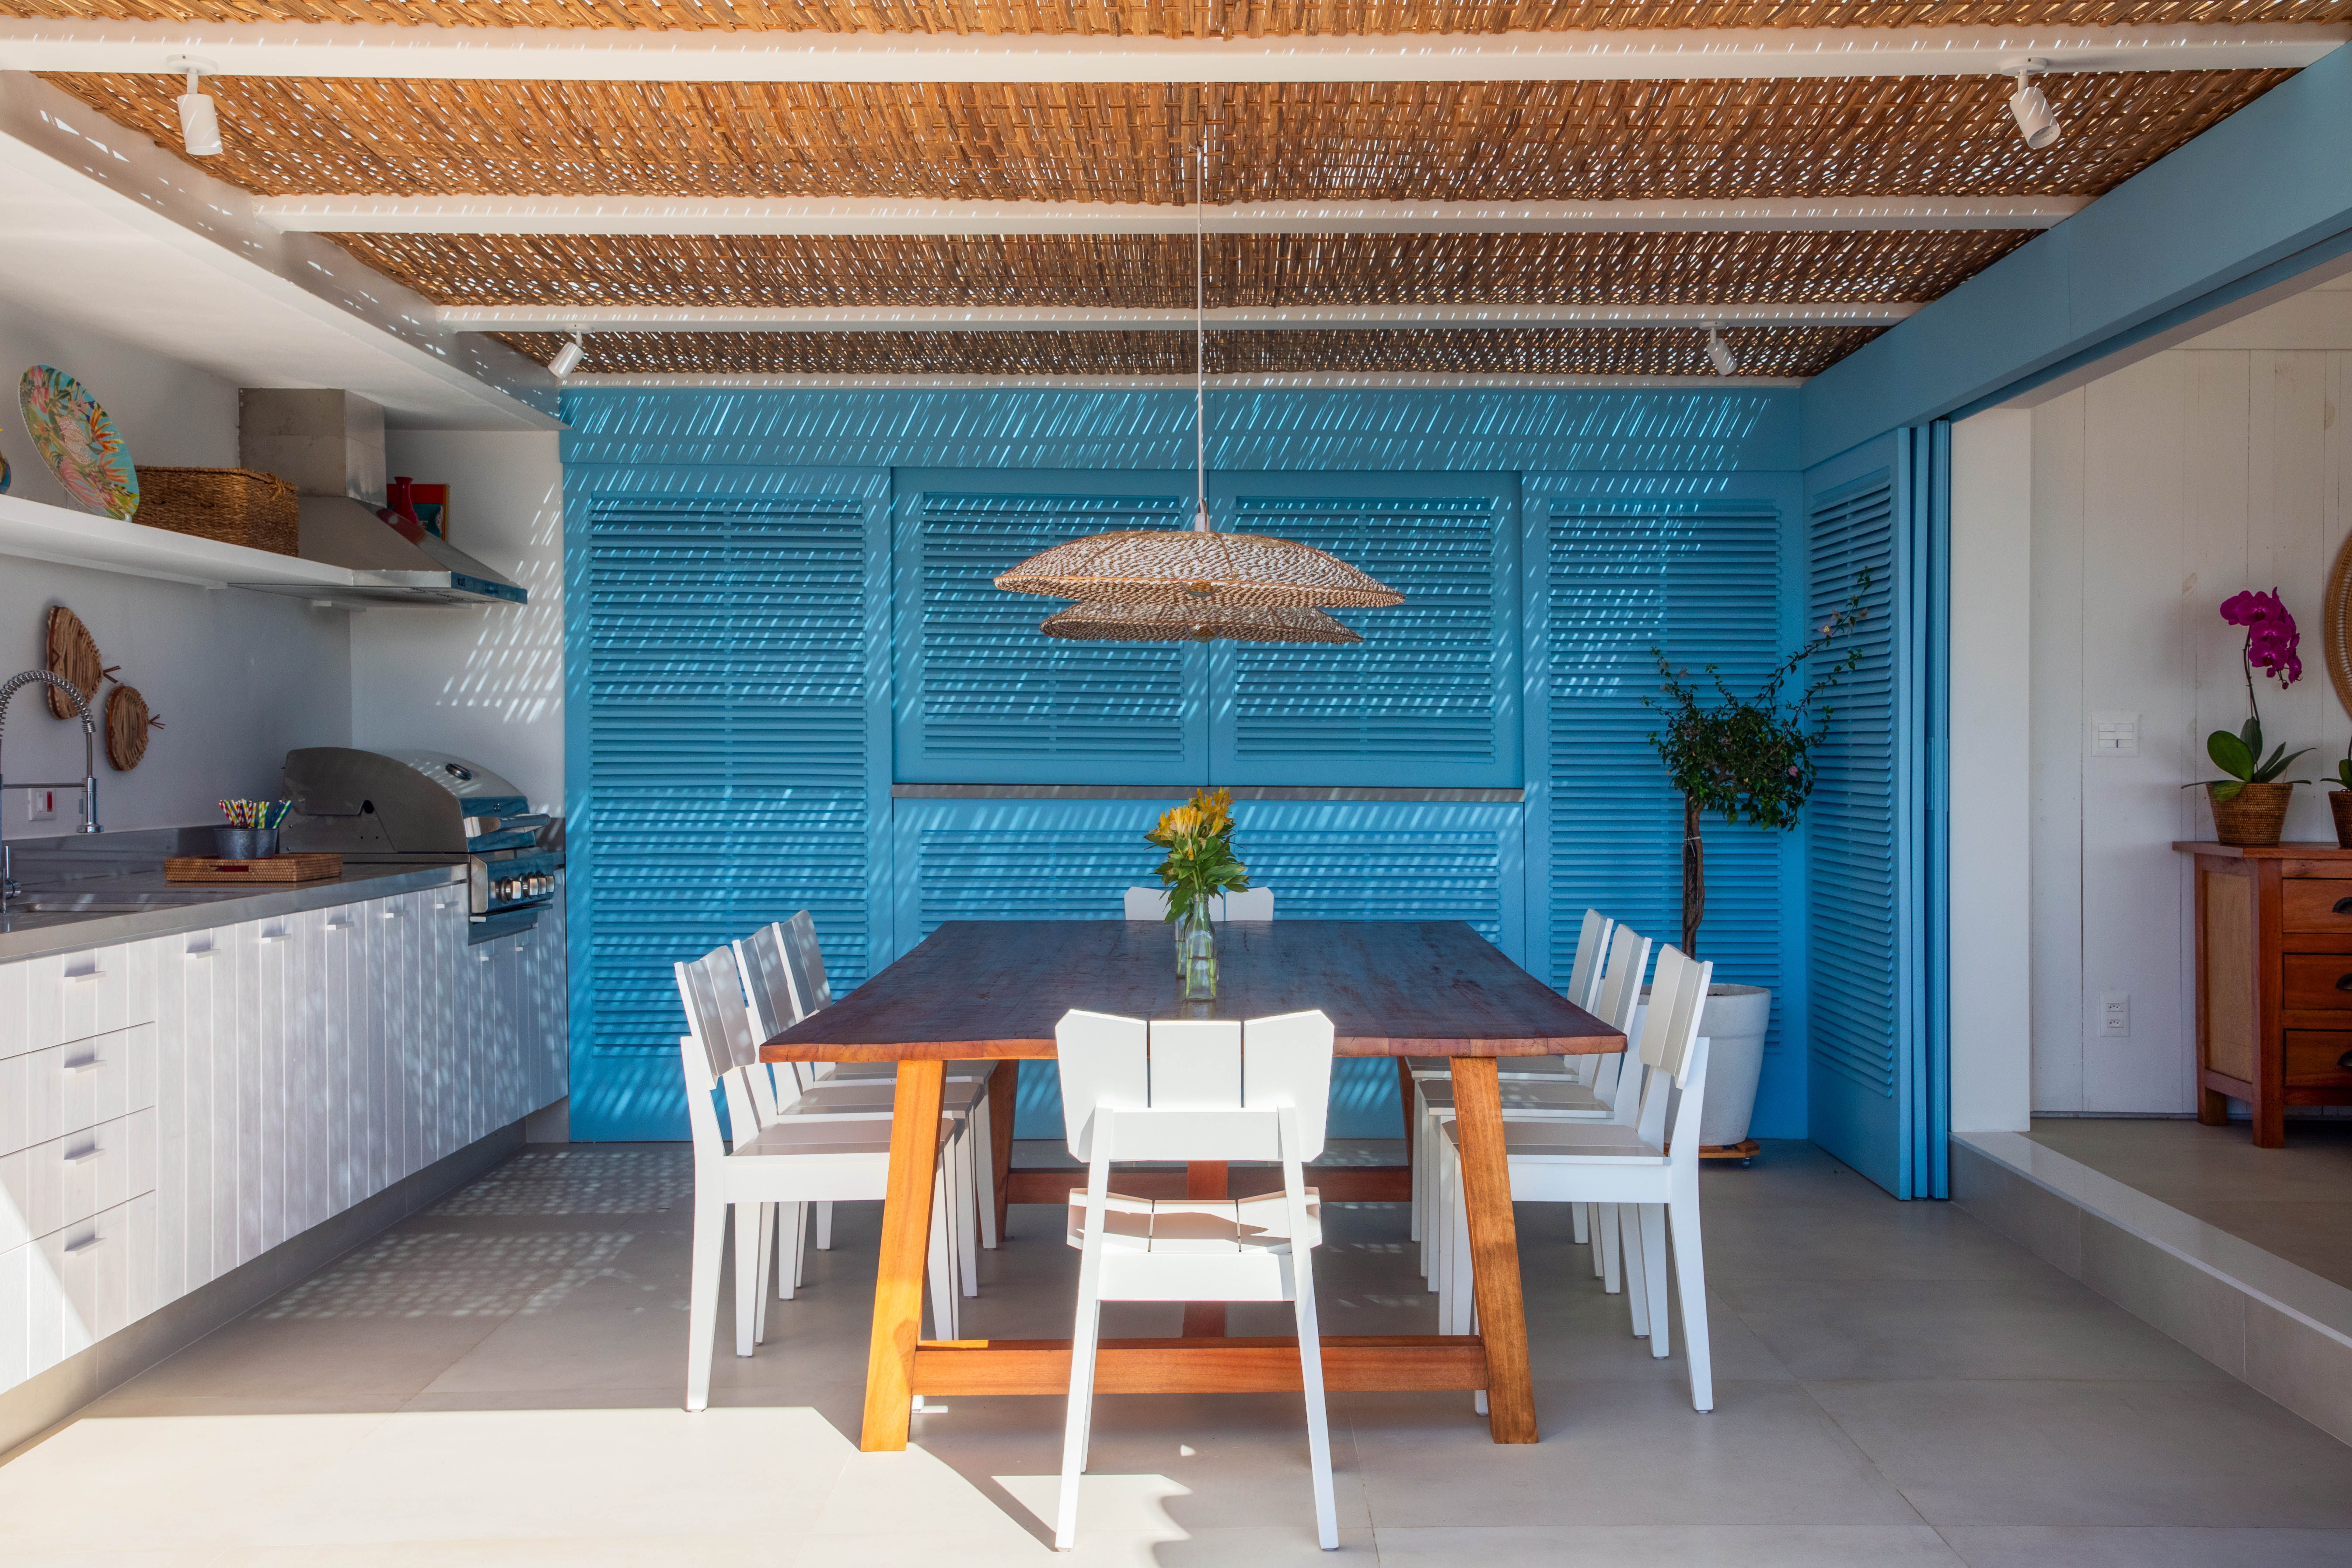 Projeto de Brise Arquitetura. Na foto, área gourmet com armários azuis, cobertura de pergolado de palhinha e mesa de madeira com cadeiras brancas.